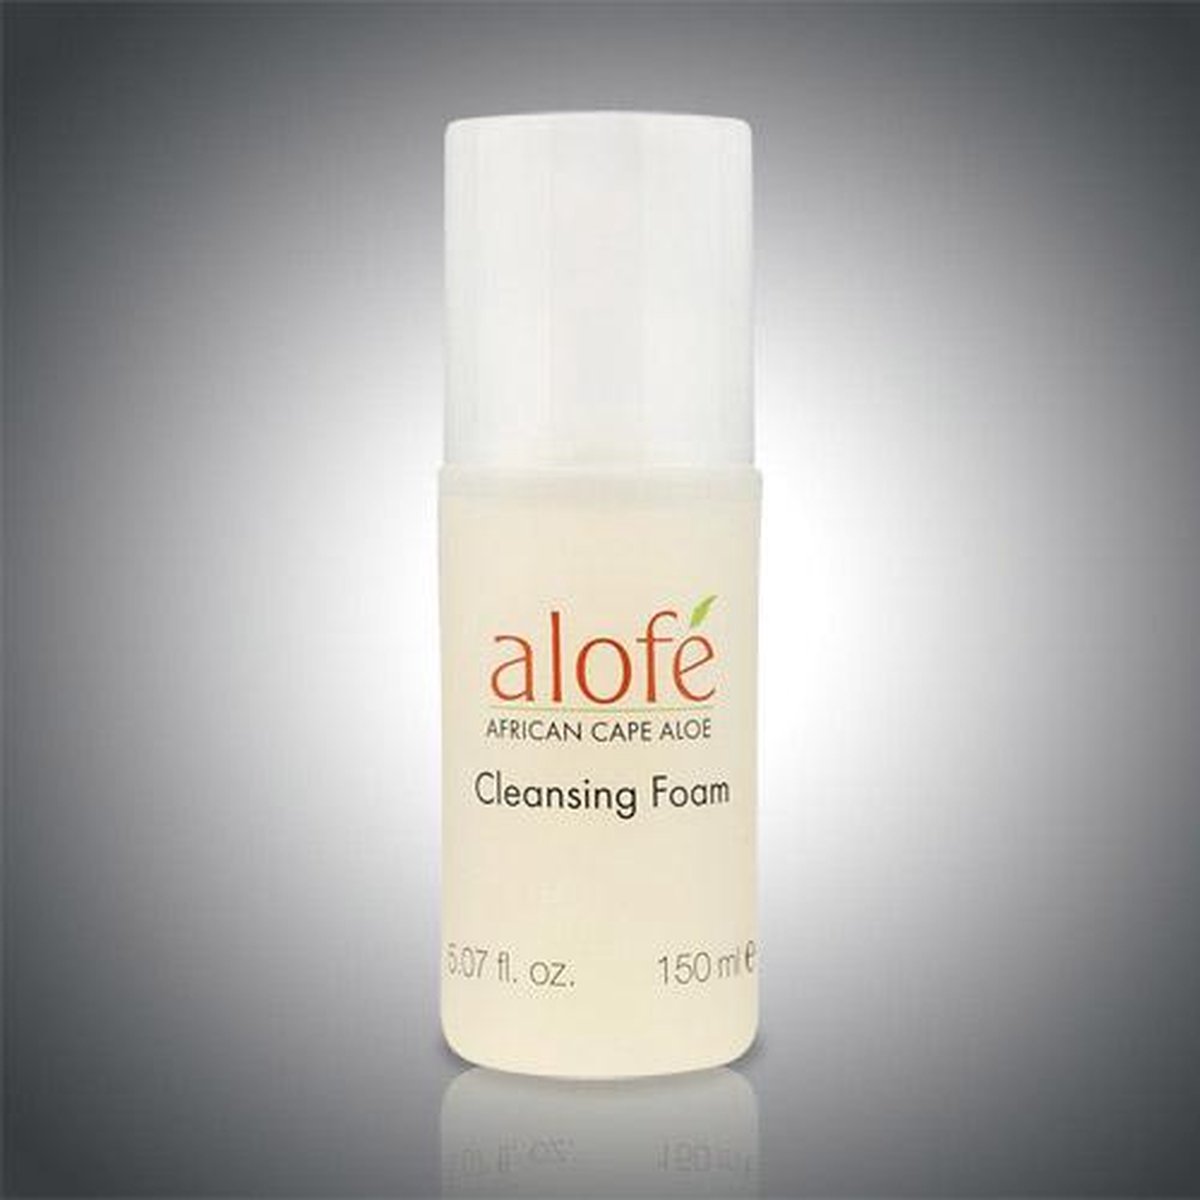 Alofe - Cleansing Foam, 150 ml